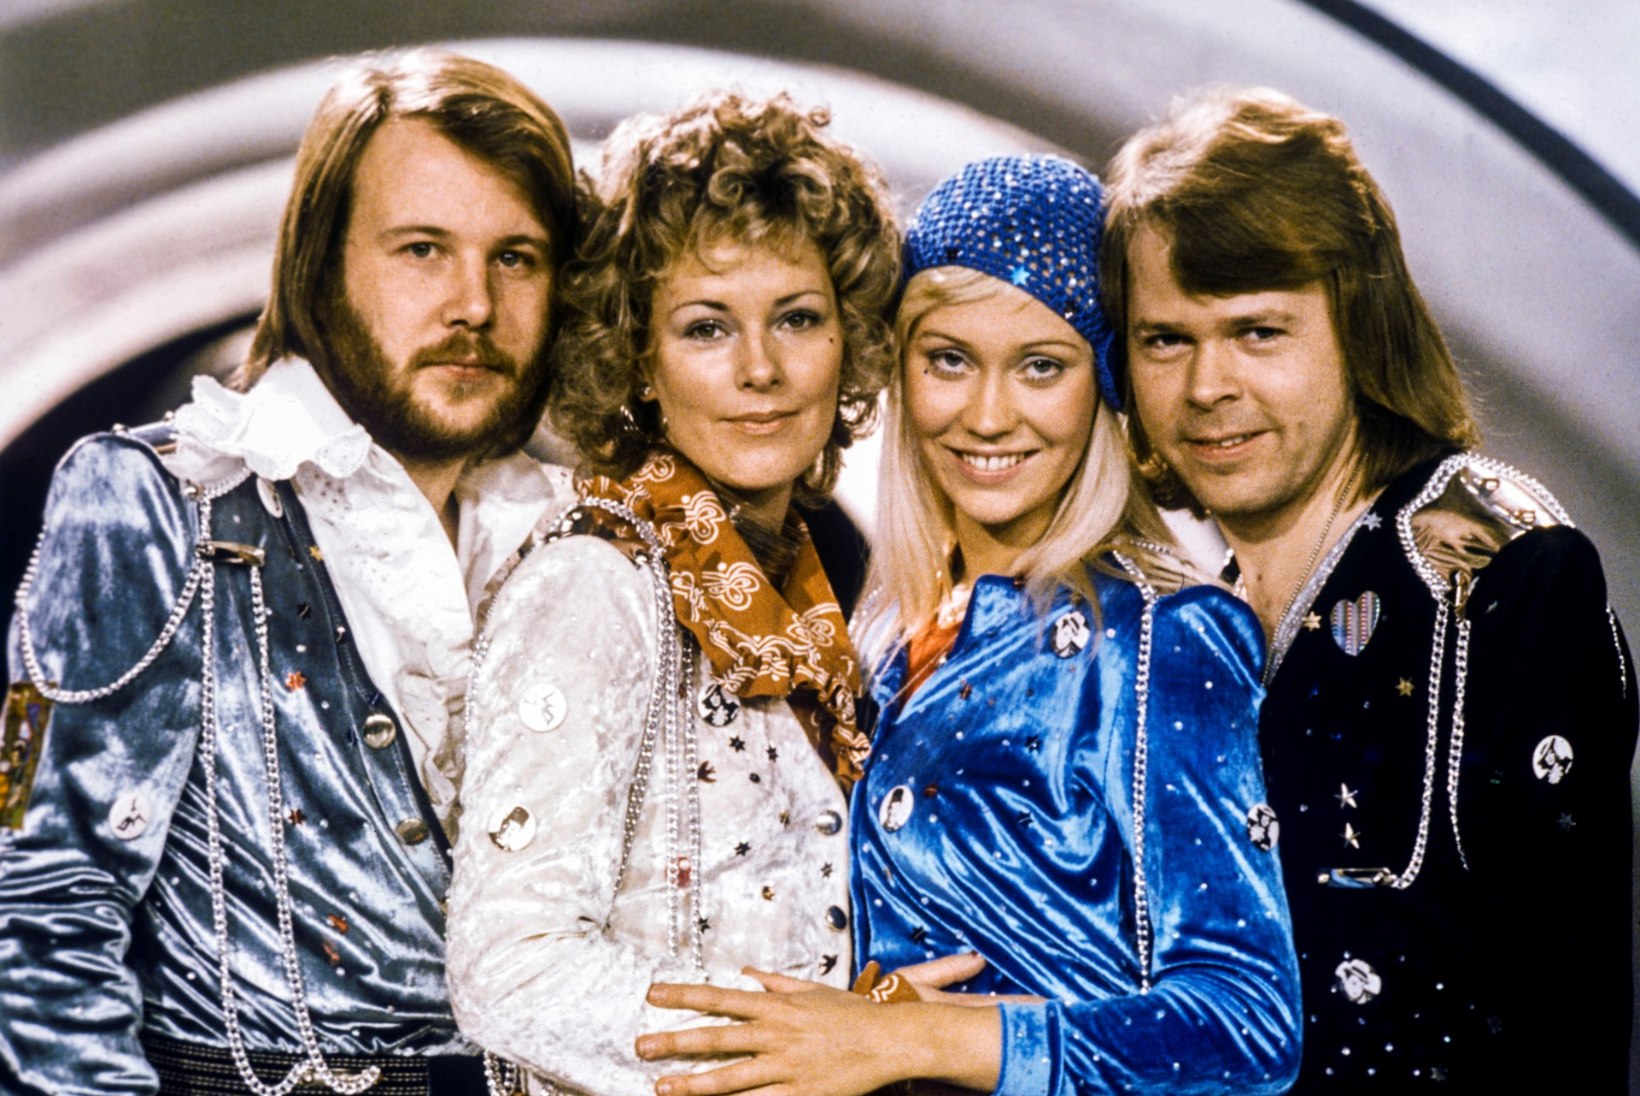 LIIGNE POLIITKORREKTSUS? ABBA hitid roogiti „Mamma Mia!“ jaoks siivsamaks